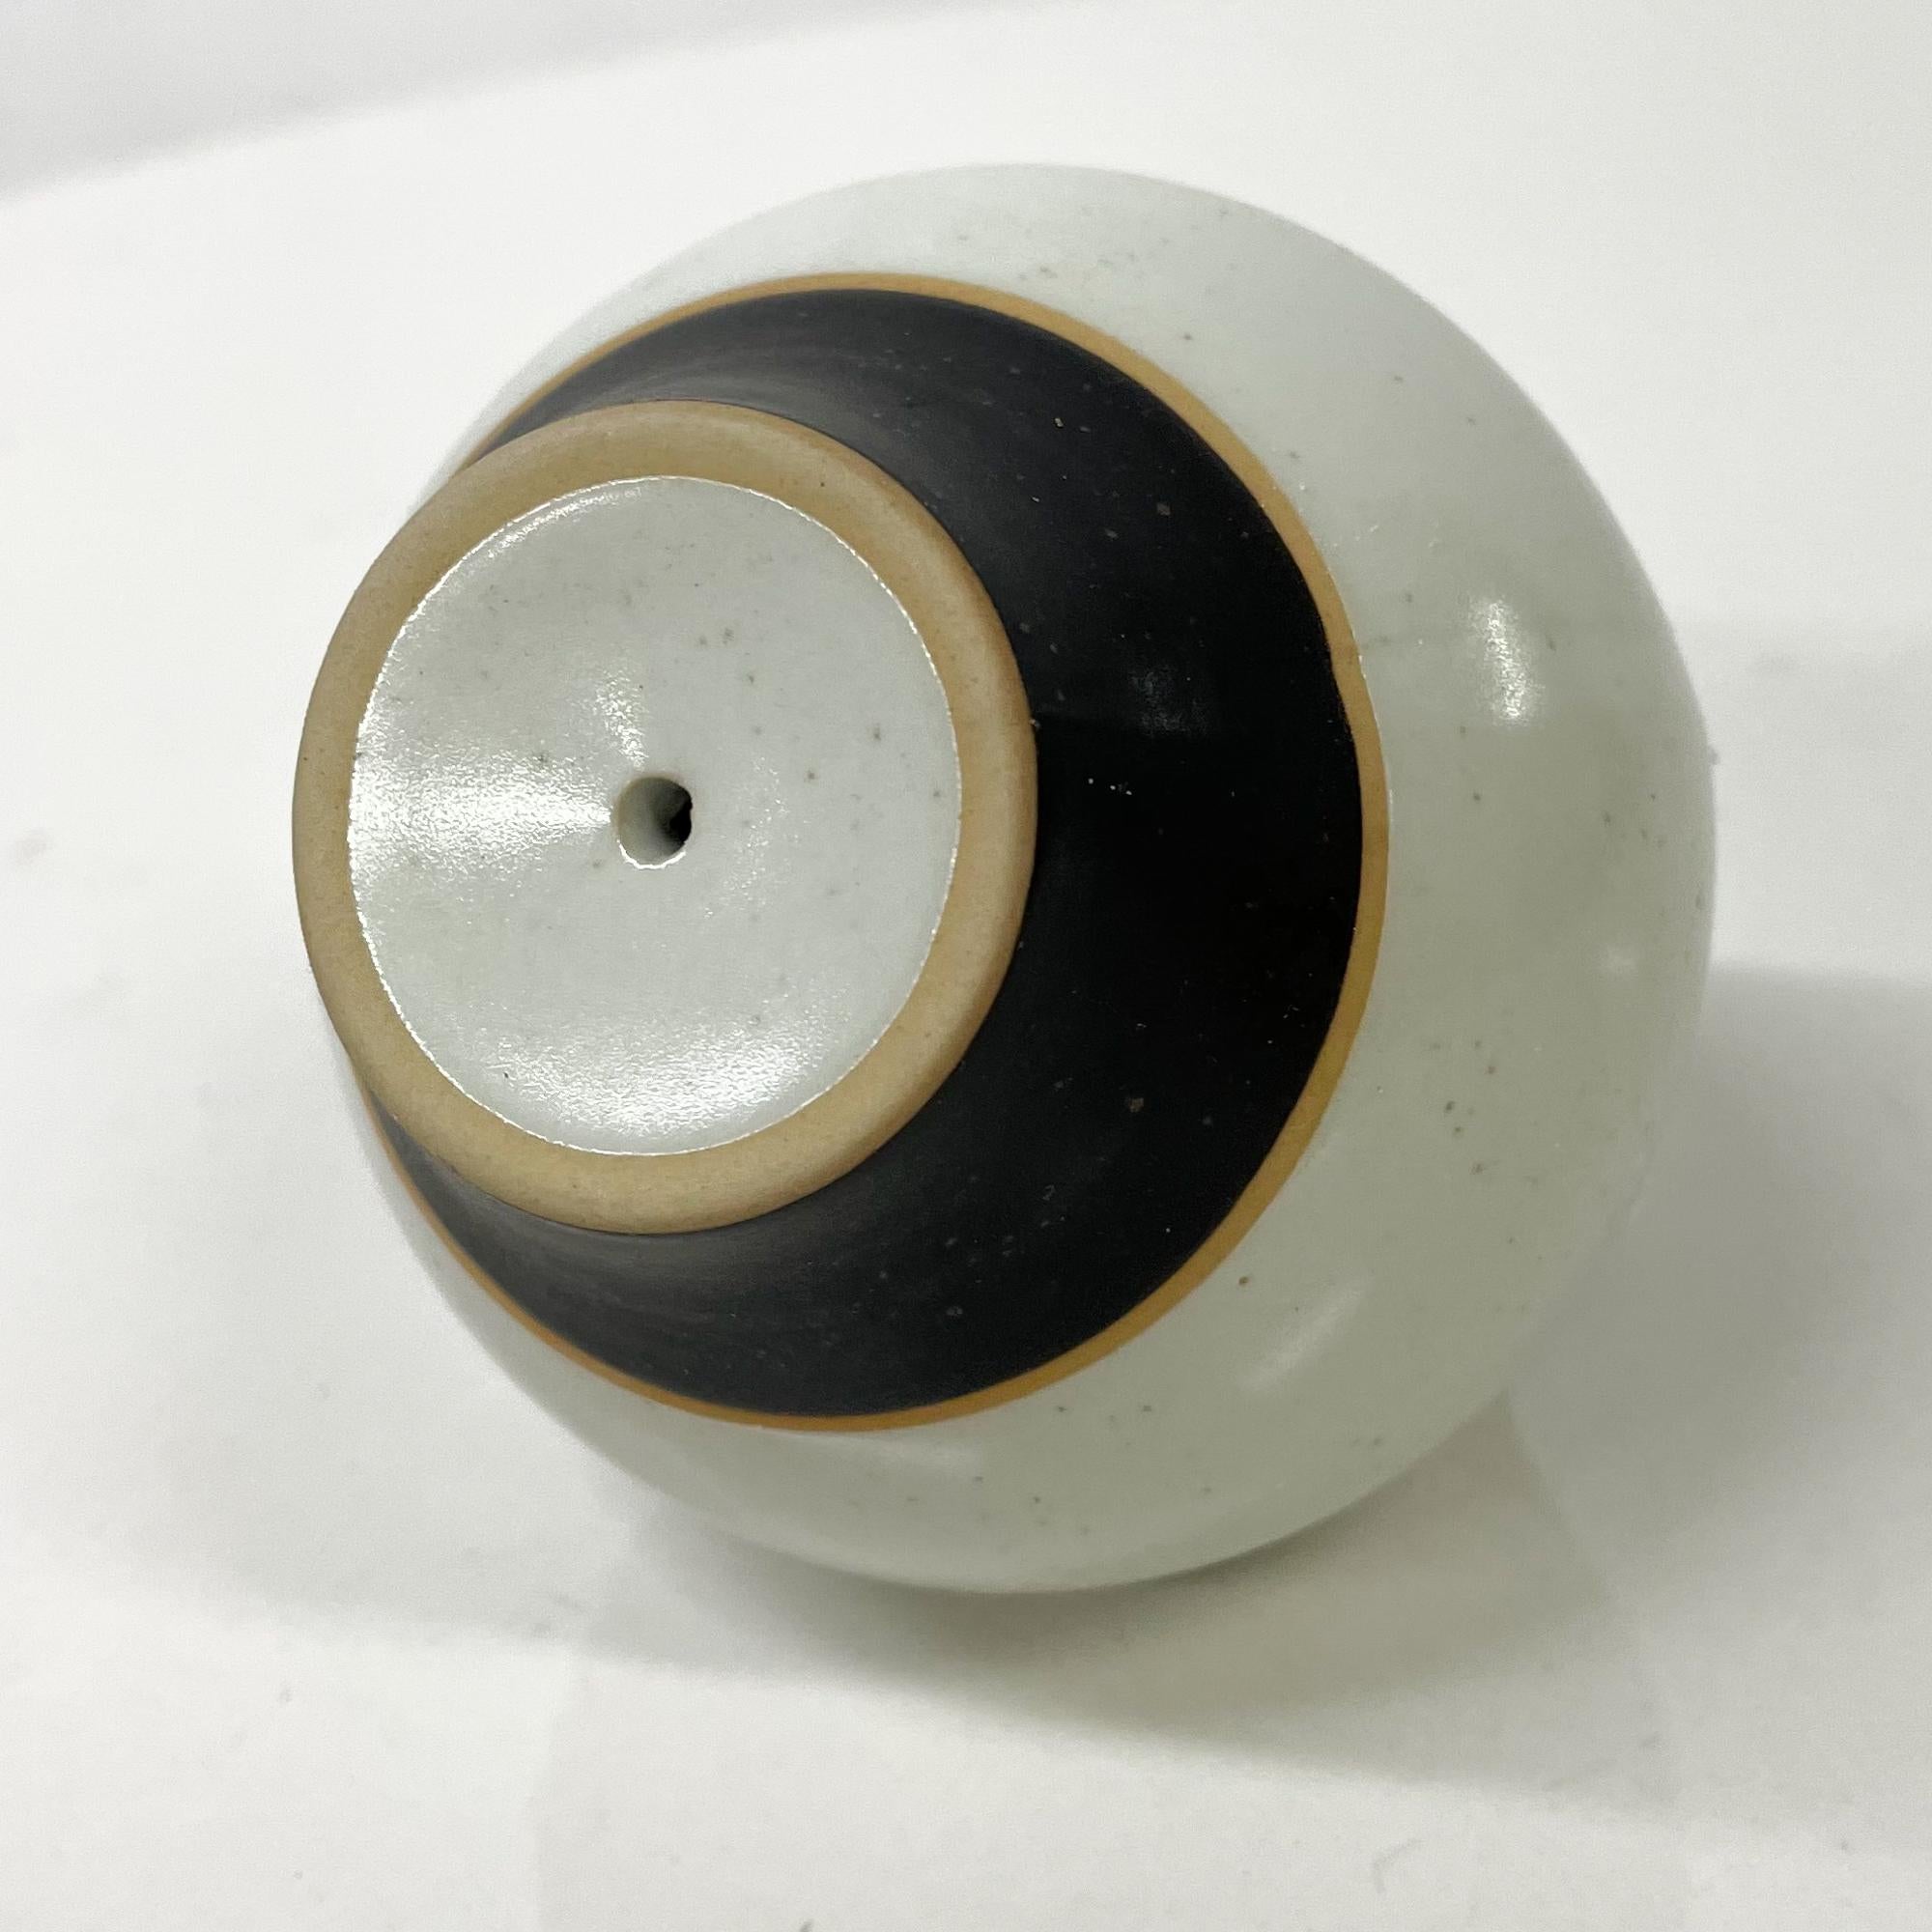 1980s Modernist Pottery Salt or Pepper Shaker Post Modern Design Black Gray 7